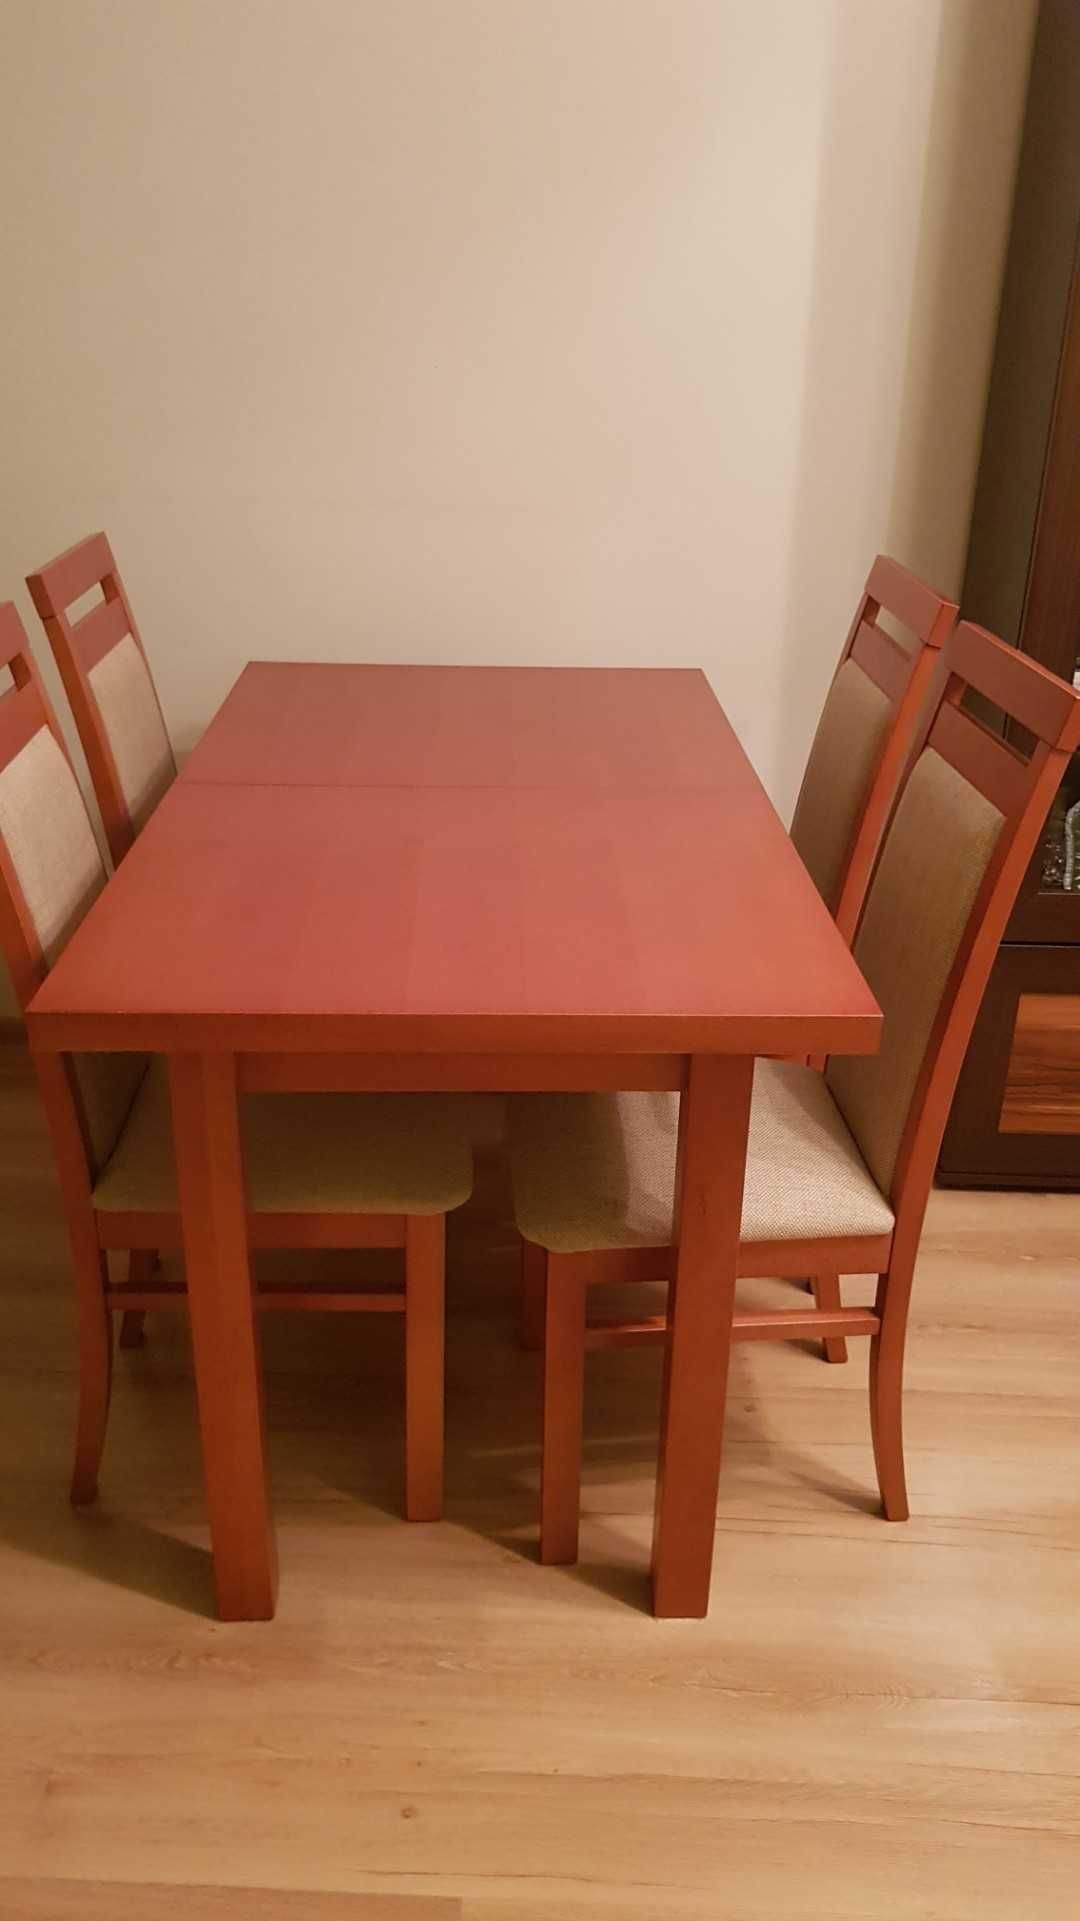 Stół rozkładany plus 4 krzesła